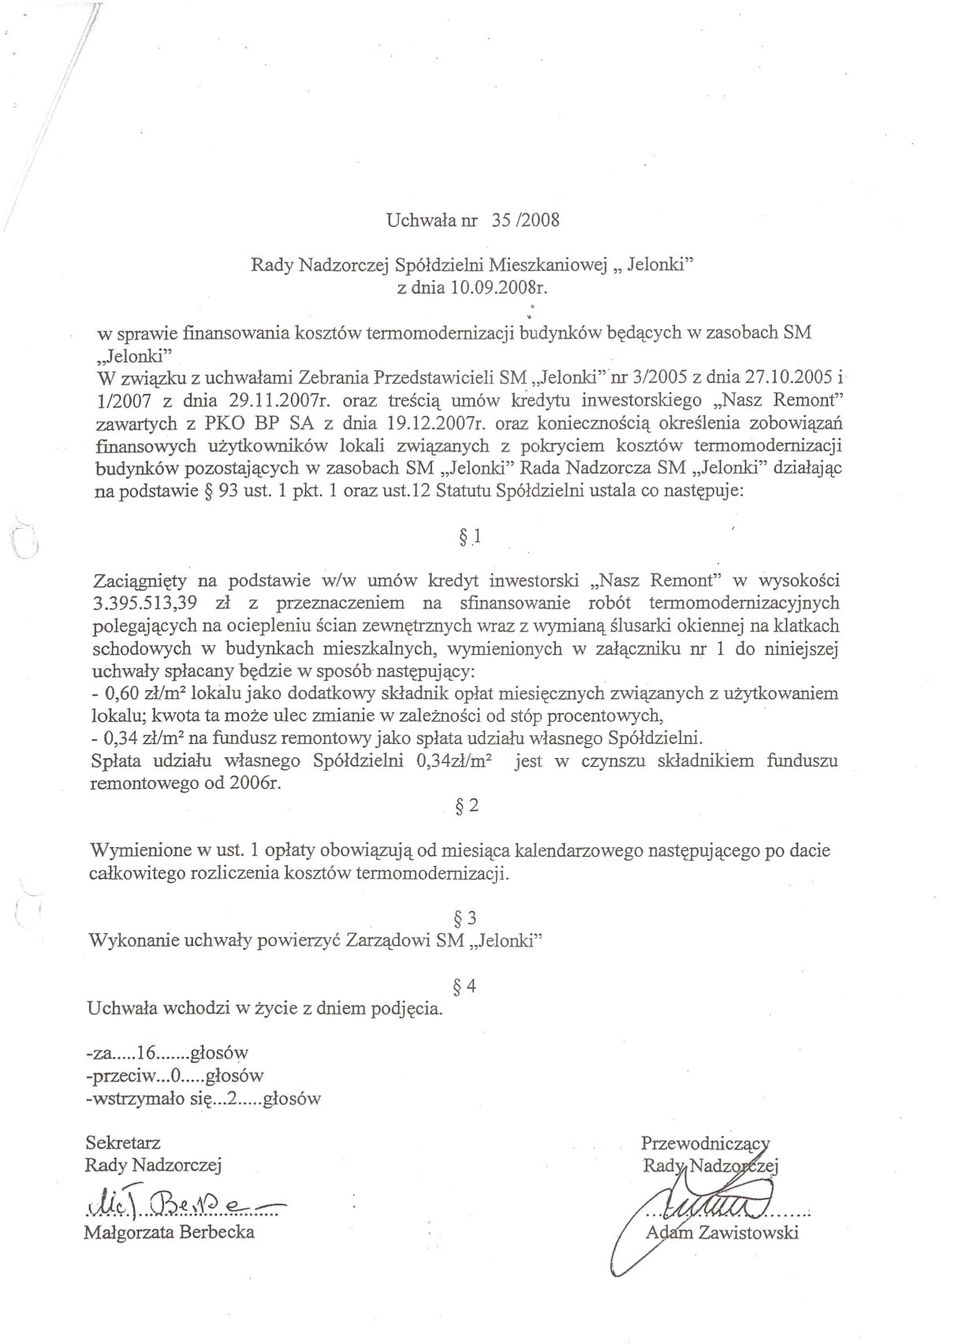 oraz trescia umów kiedytu inwestorskiego "Nasz Remont" zawartych z PKO BP SA z dnia 19.12.2007r.